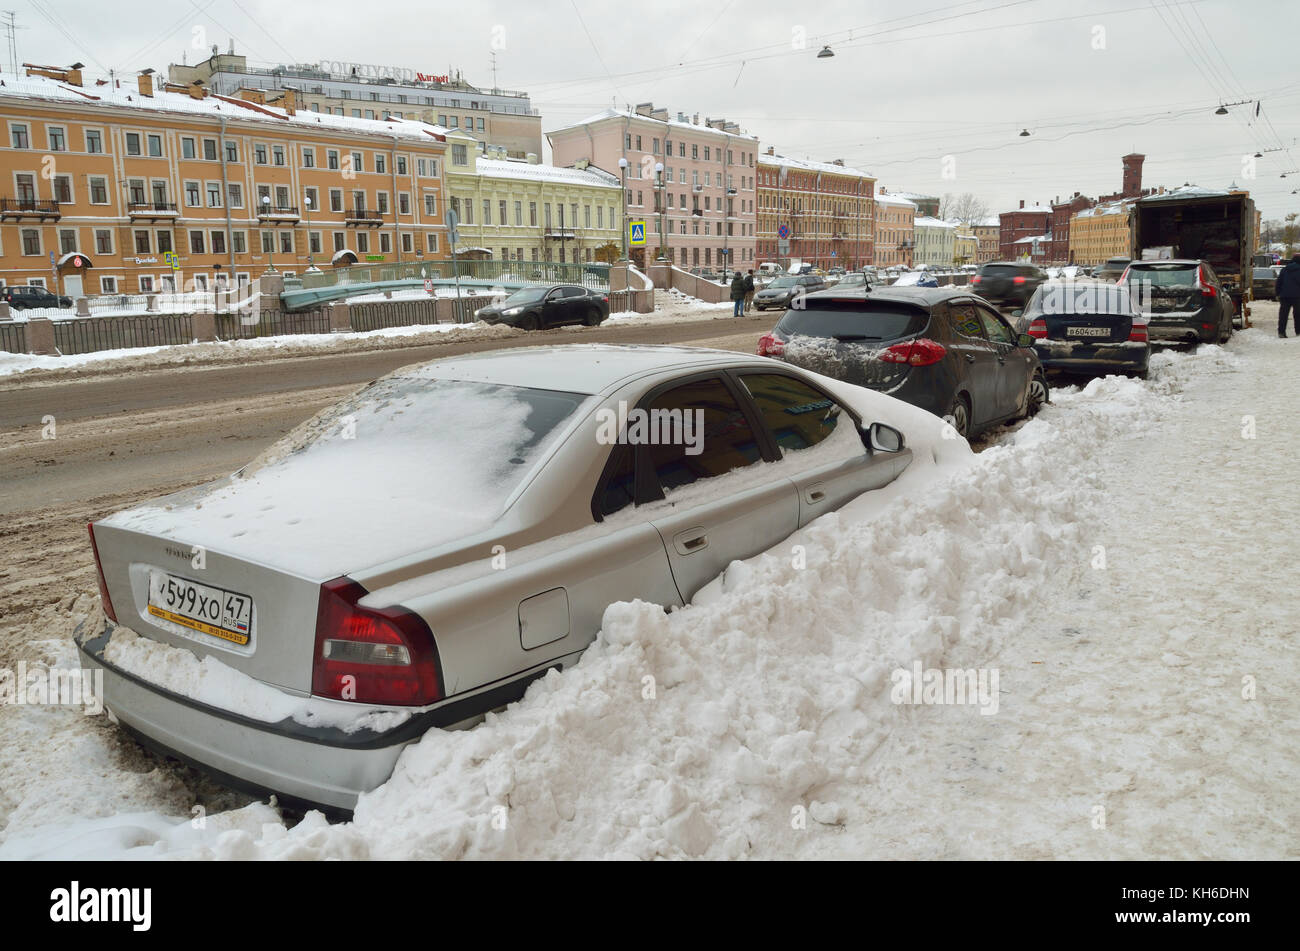 12.11.2016. Russland. saint-petersburg. In der Stadt, im November, fiel der Schnee mehr als im Winter. Stockfoto